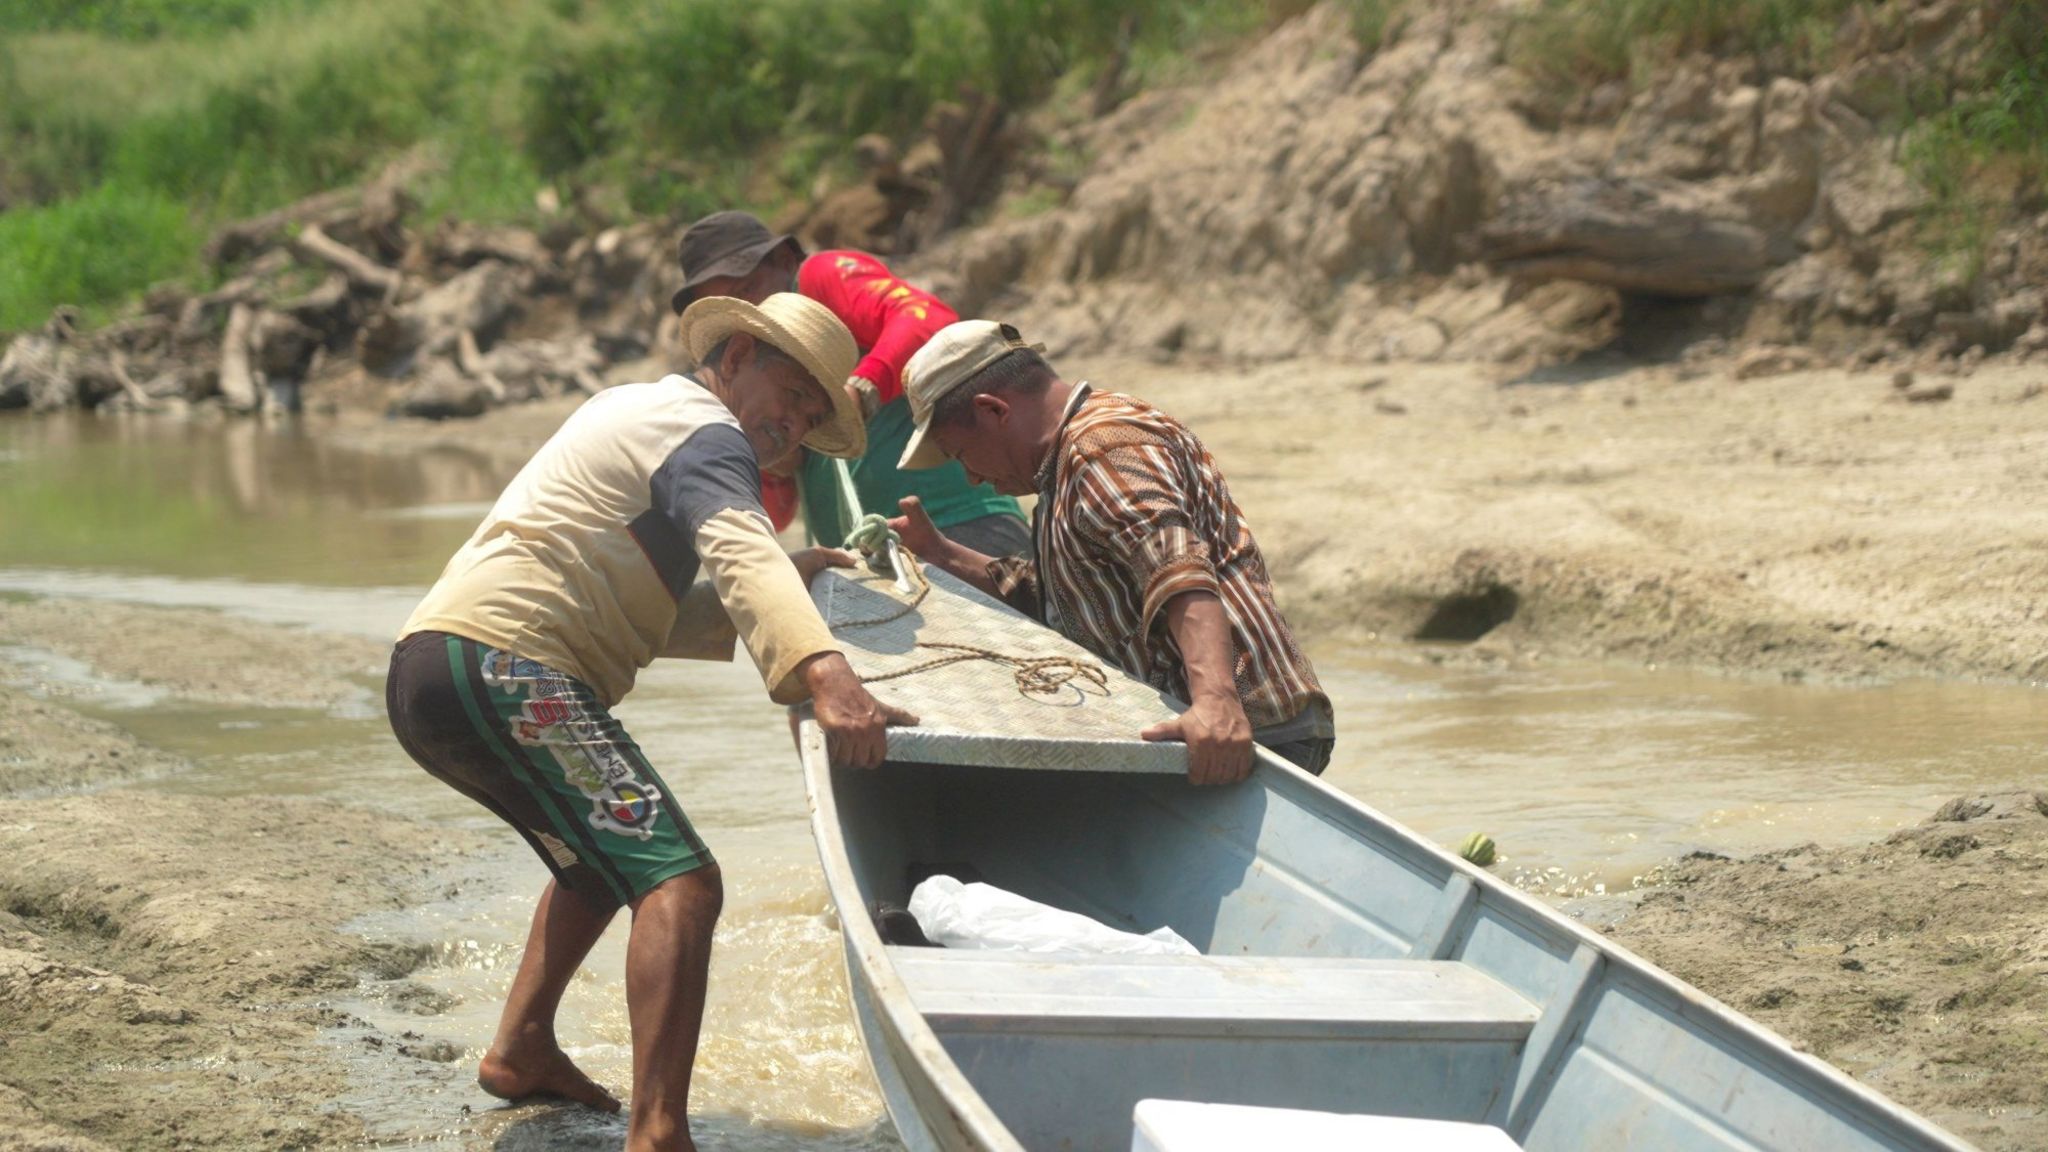 Oliveira și prietenii trăgându-și canoea de-a lungul pârâului secat